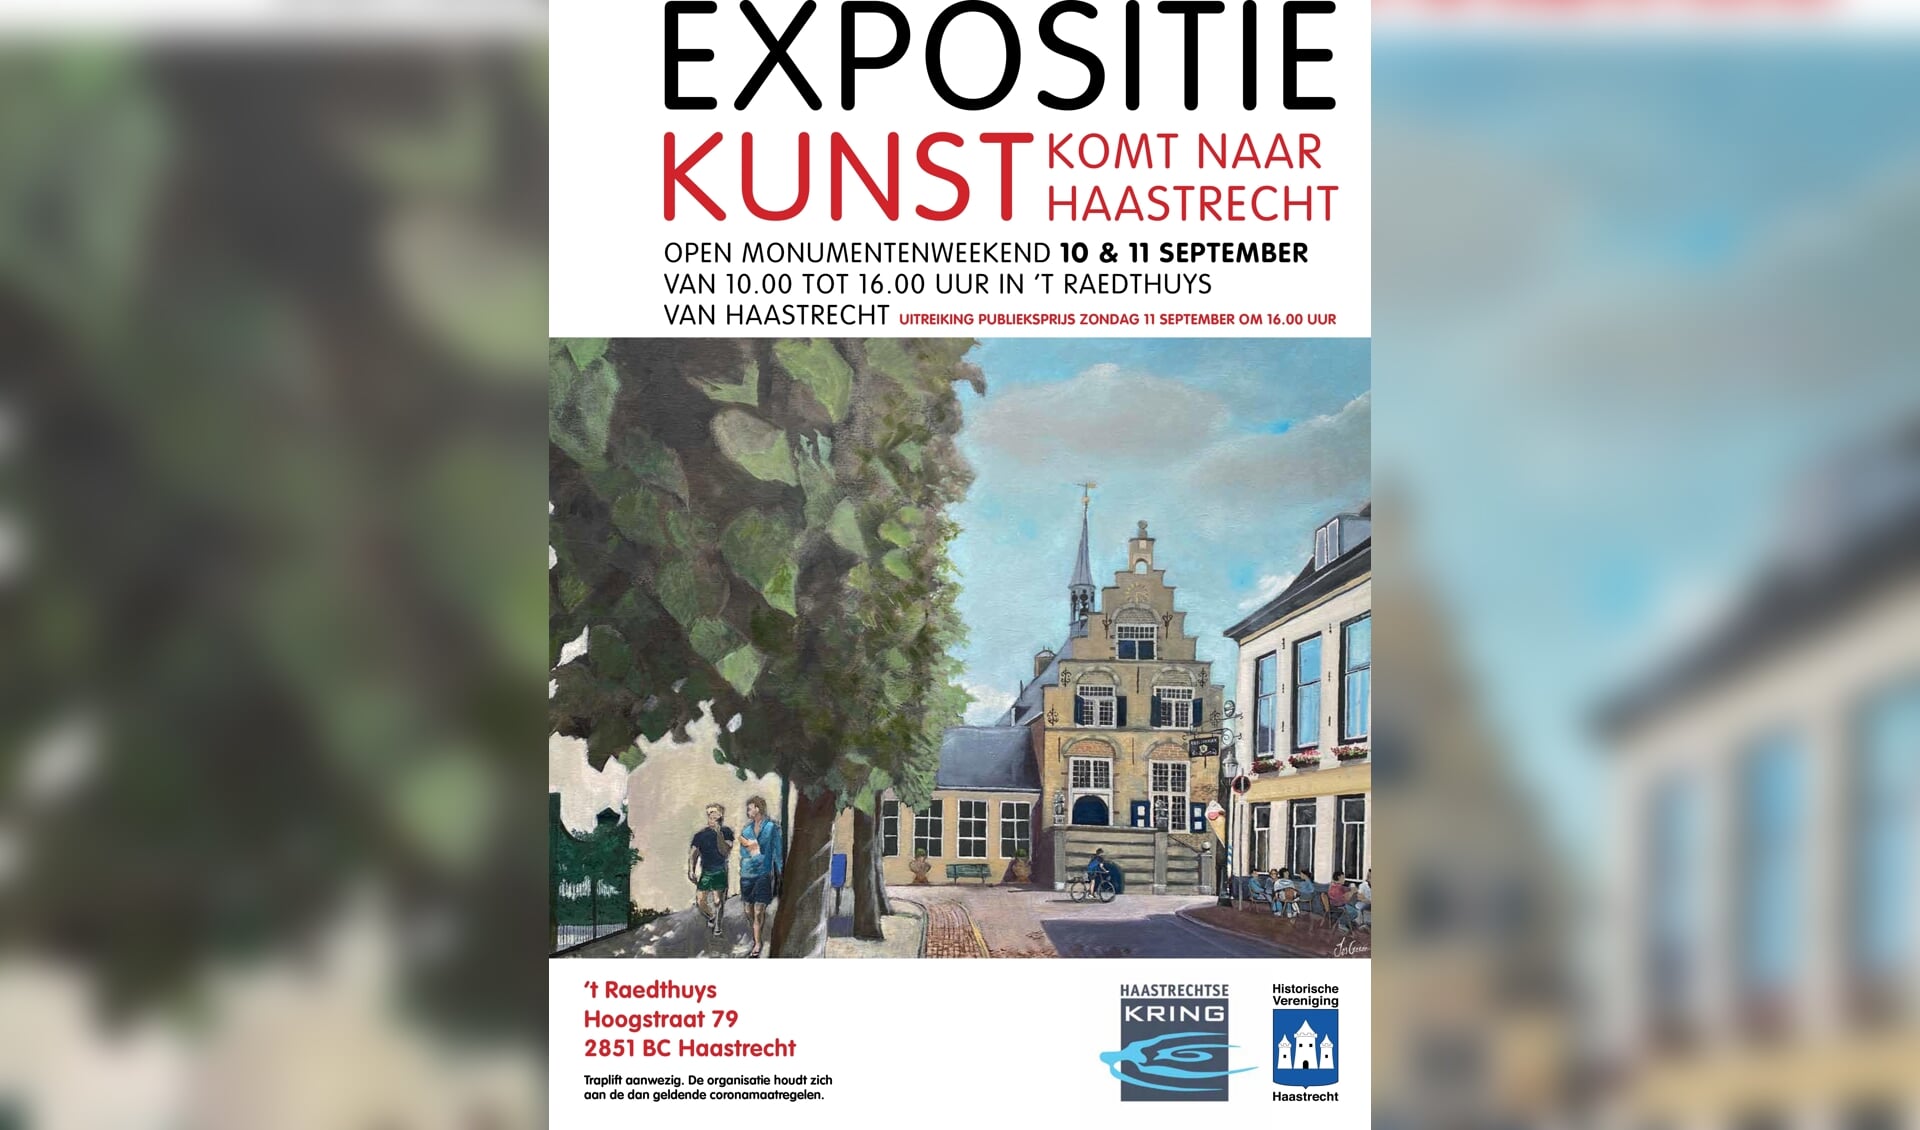 “Expositie Kunst komt naar Haastrecht” in ‘t Raedthuys  